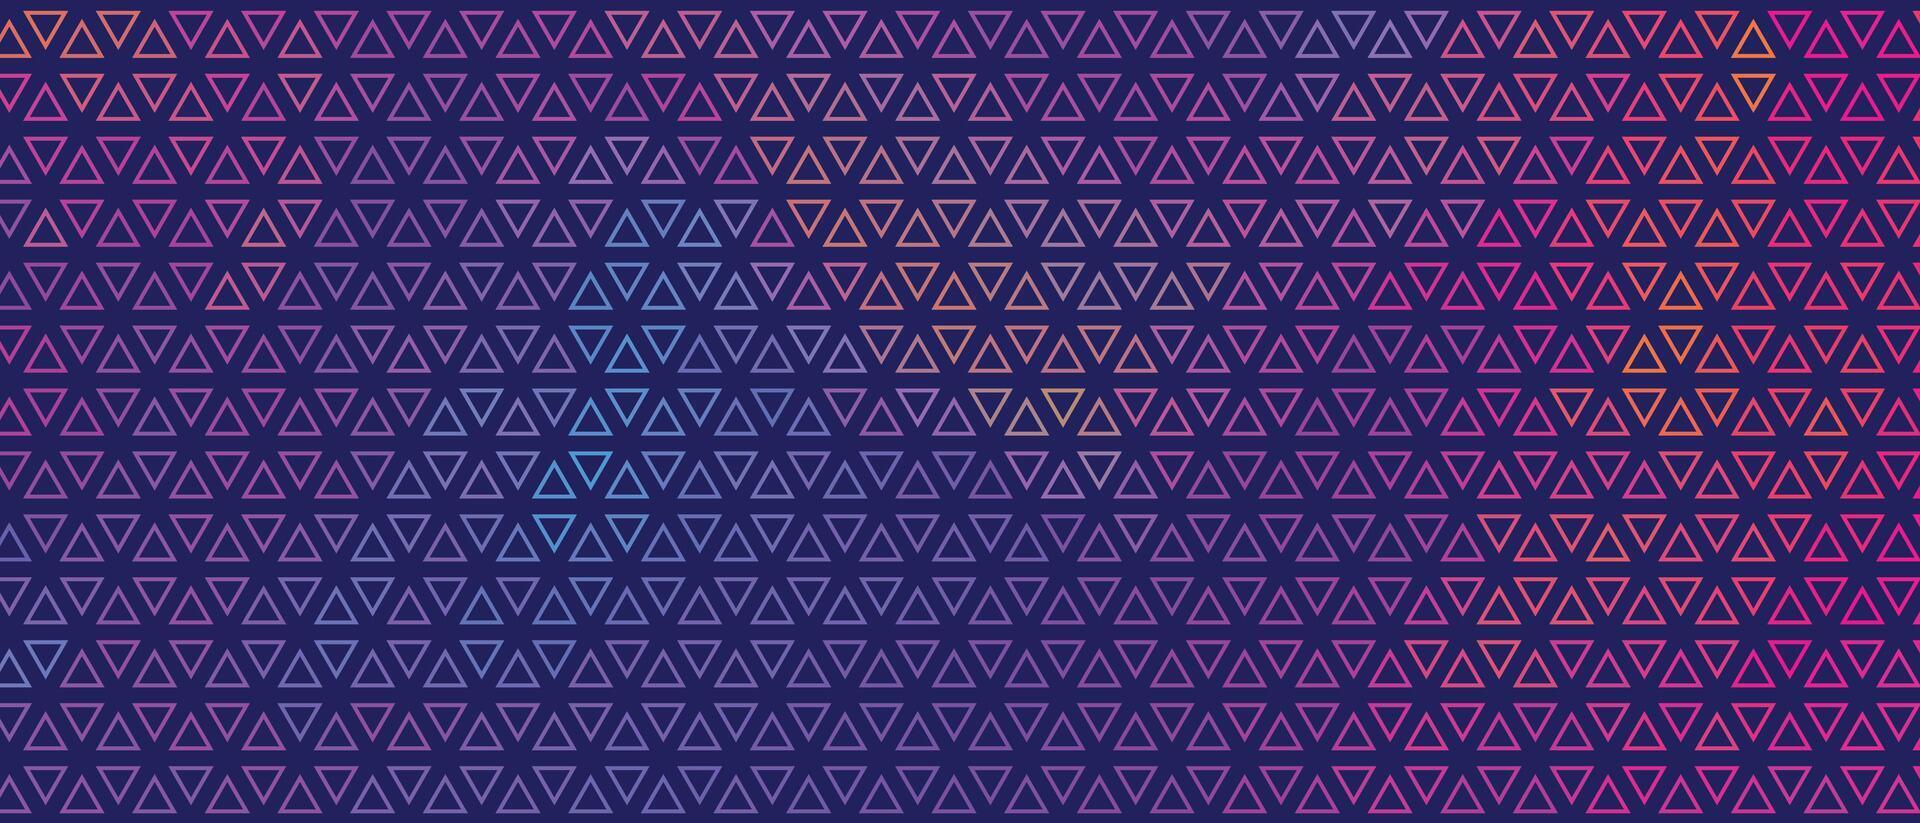 abstrakt bunt klein Dreieck Muster Banner Design vektor